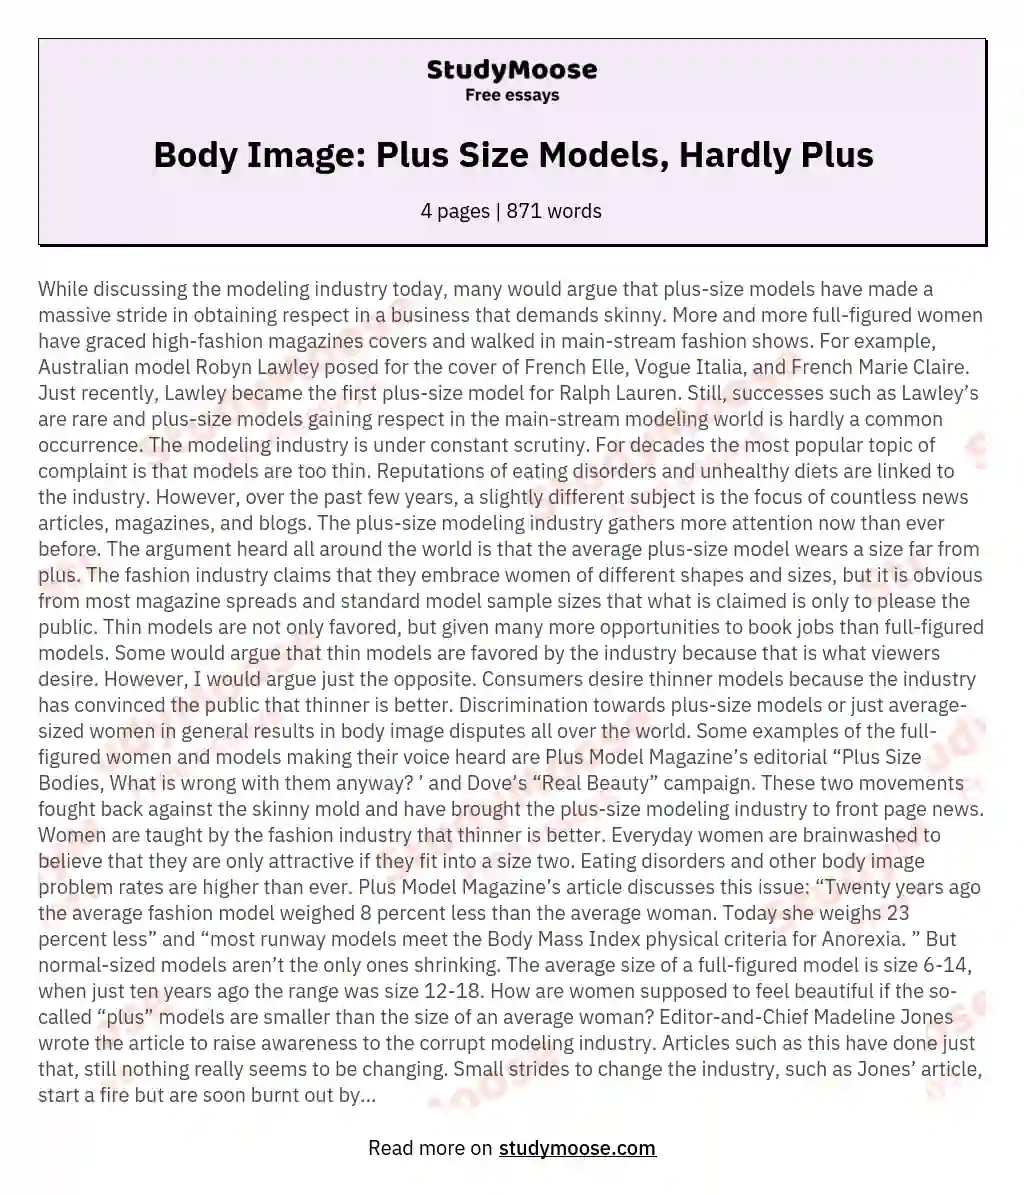 Body Image: Plus Size Models, Hardly Plus essay